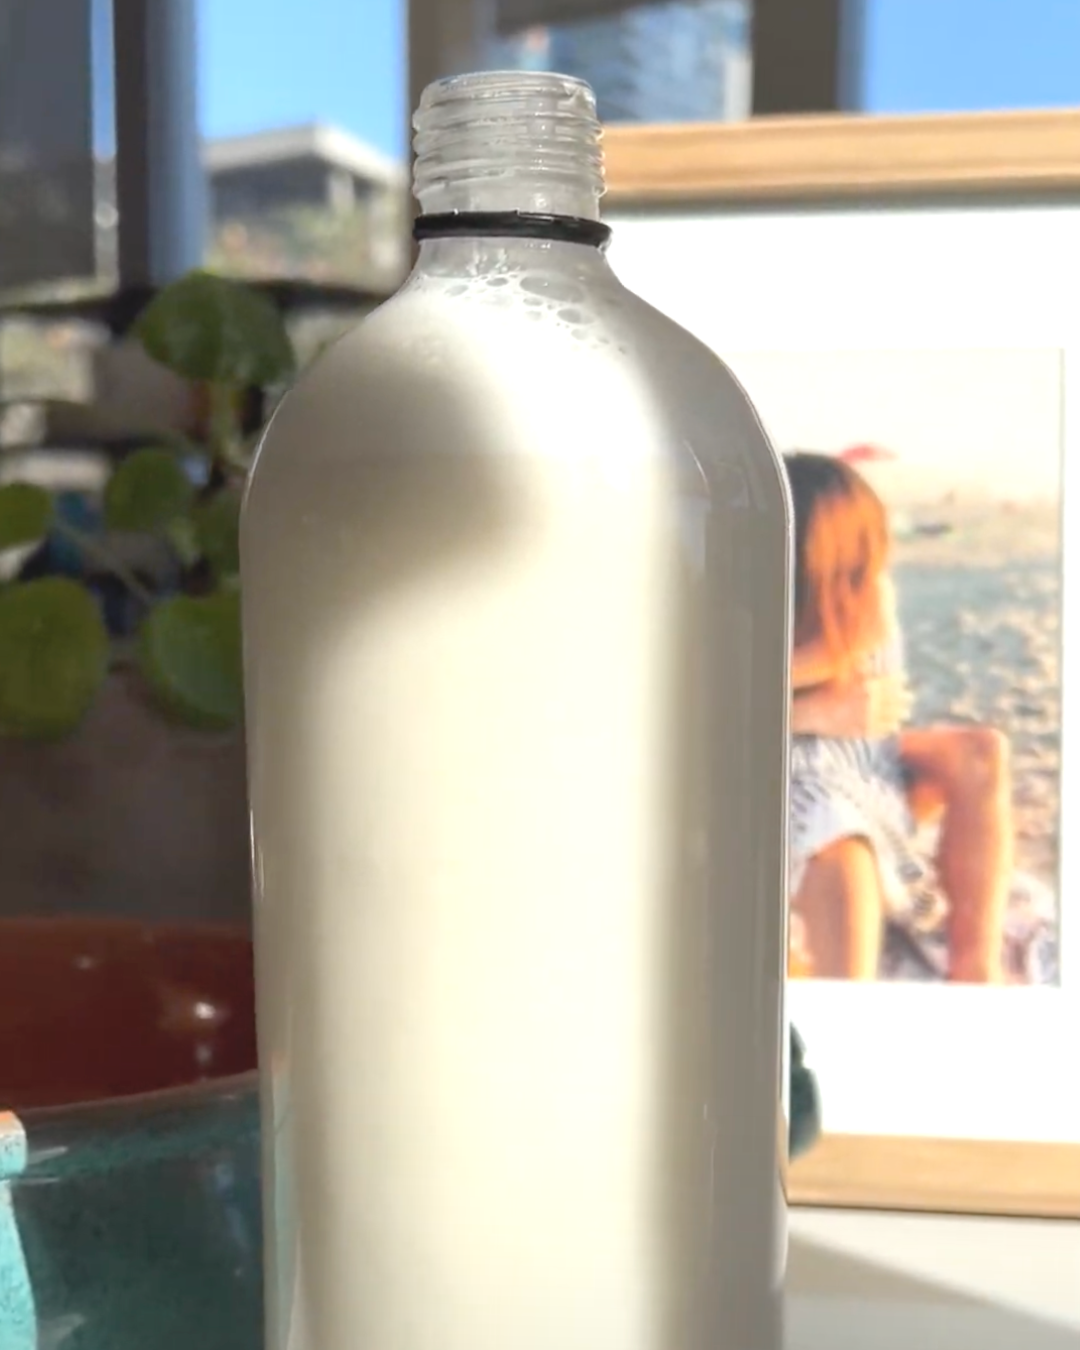 Glass bottle full of milk